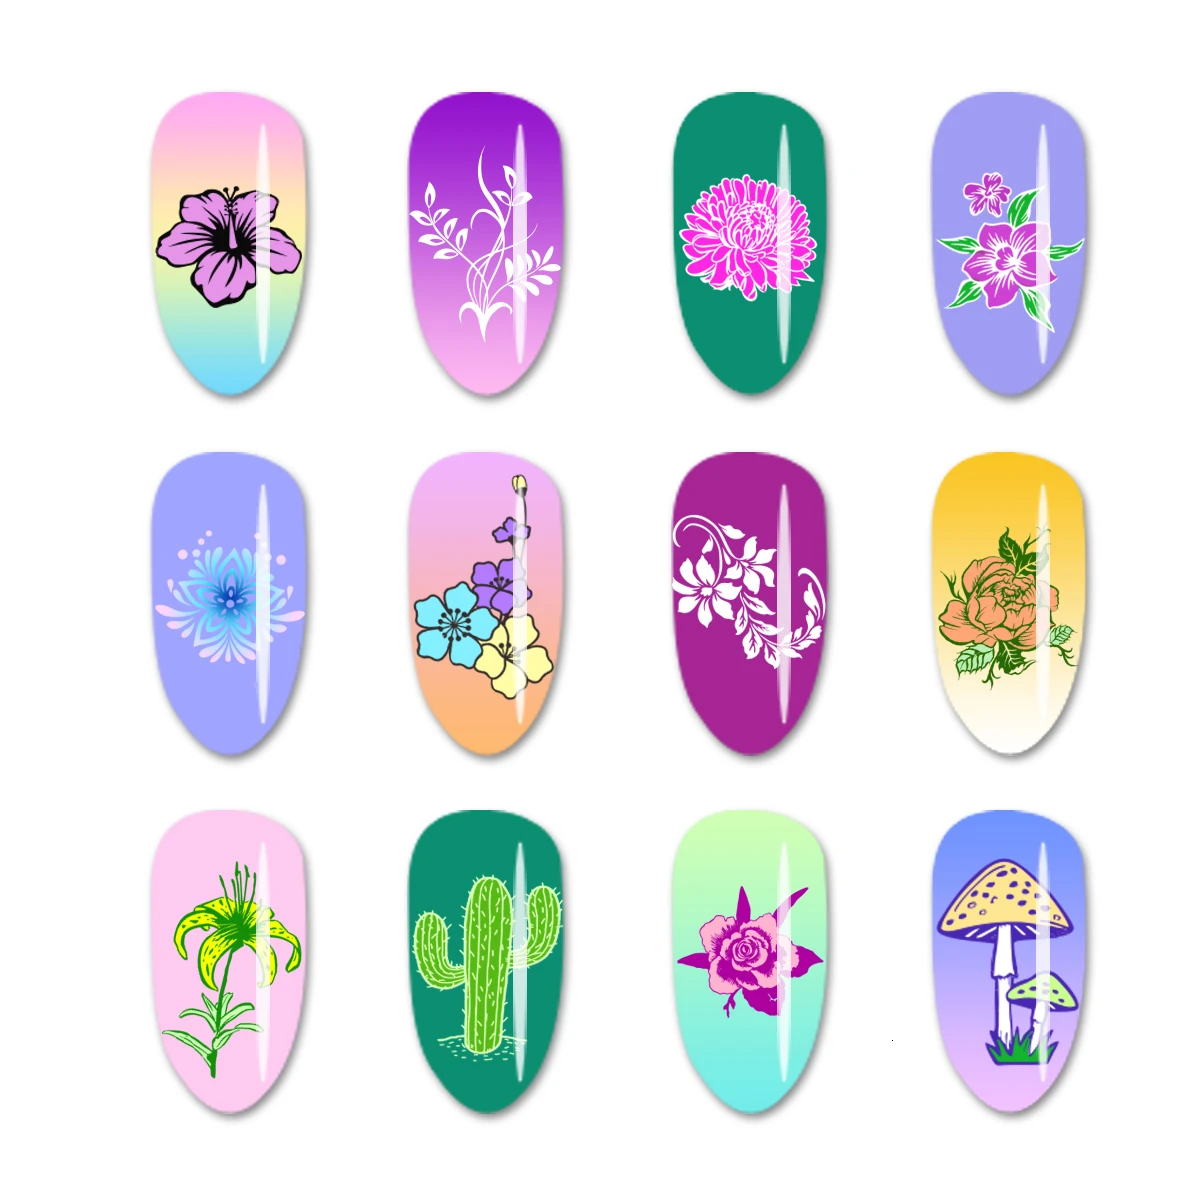 Beautybigbang новые пластины для штамповки ногтей натуральный цветок тема белка кактус печать изображения 12*6 см Дизайн ногтей трафарет шаблон плесень